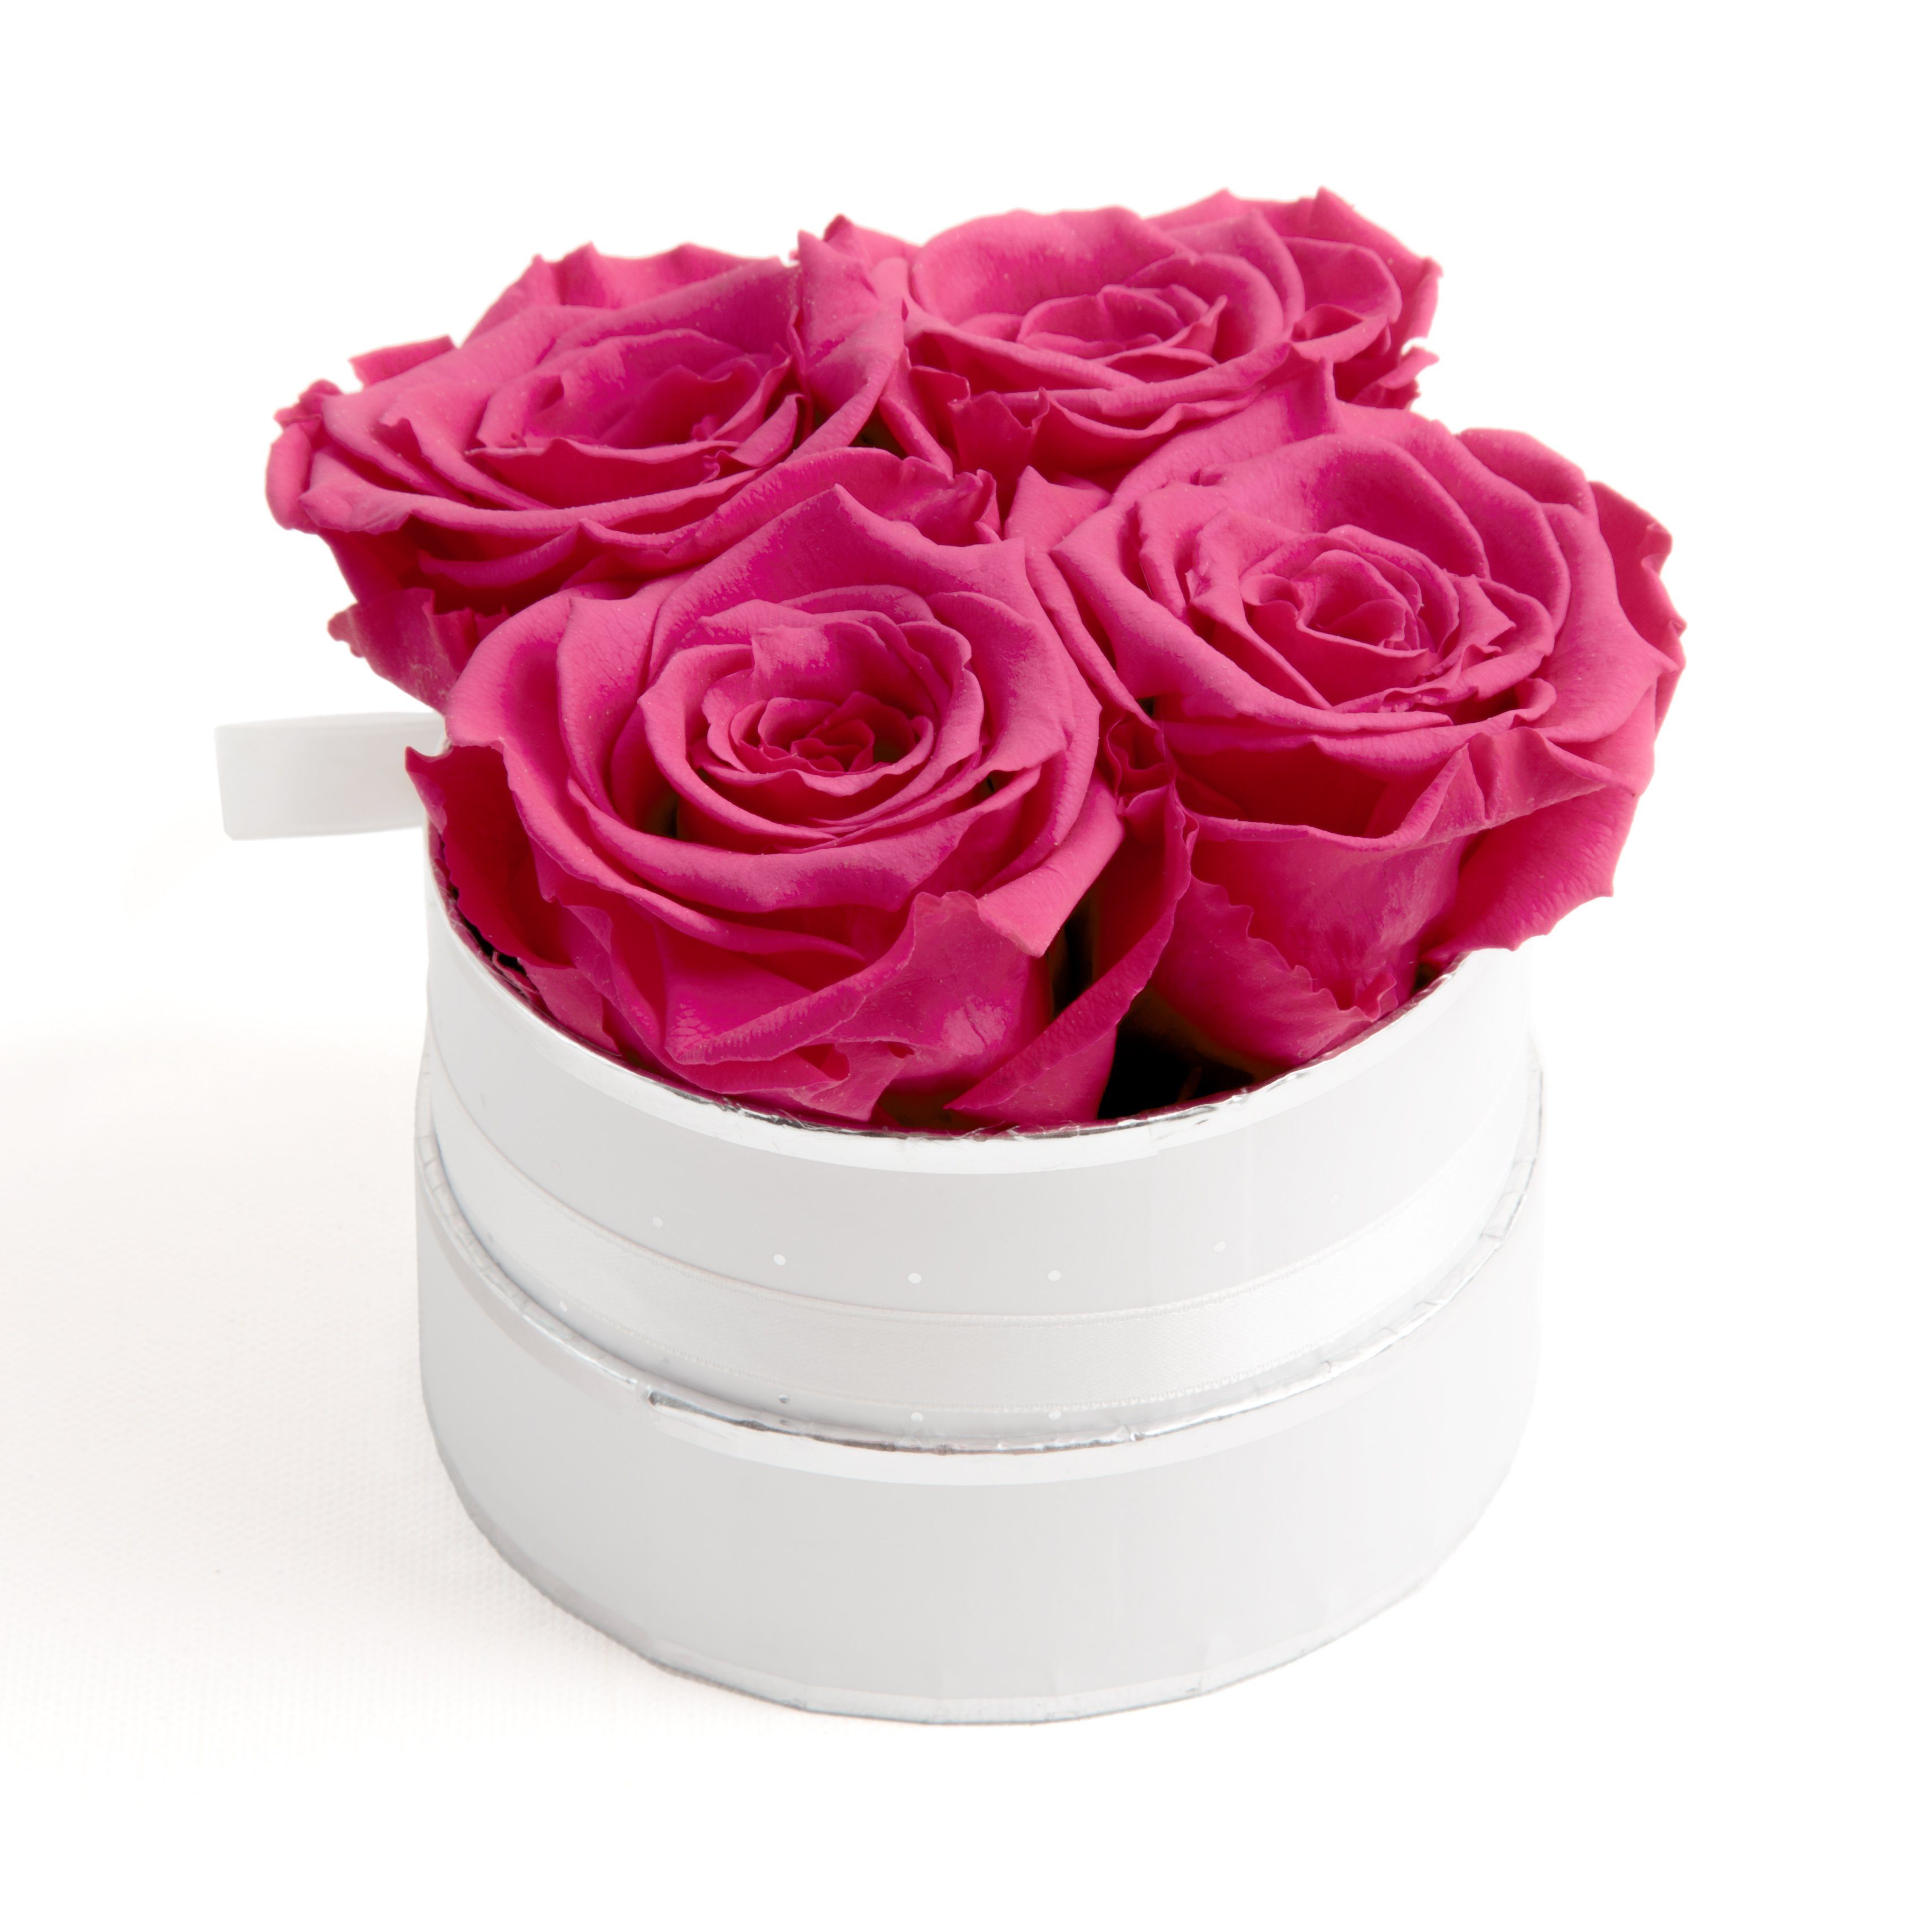 Pink Rosen cm, Infinity SCHULZ echte haltbar Höhe Rosen inklusiv Geschenkbox 10 4 Rosenbox Heidelberg, konservierte weiß ROSEMARIE Rose, Kunstblume 3 Jahre rund